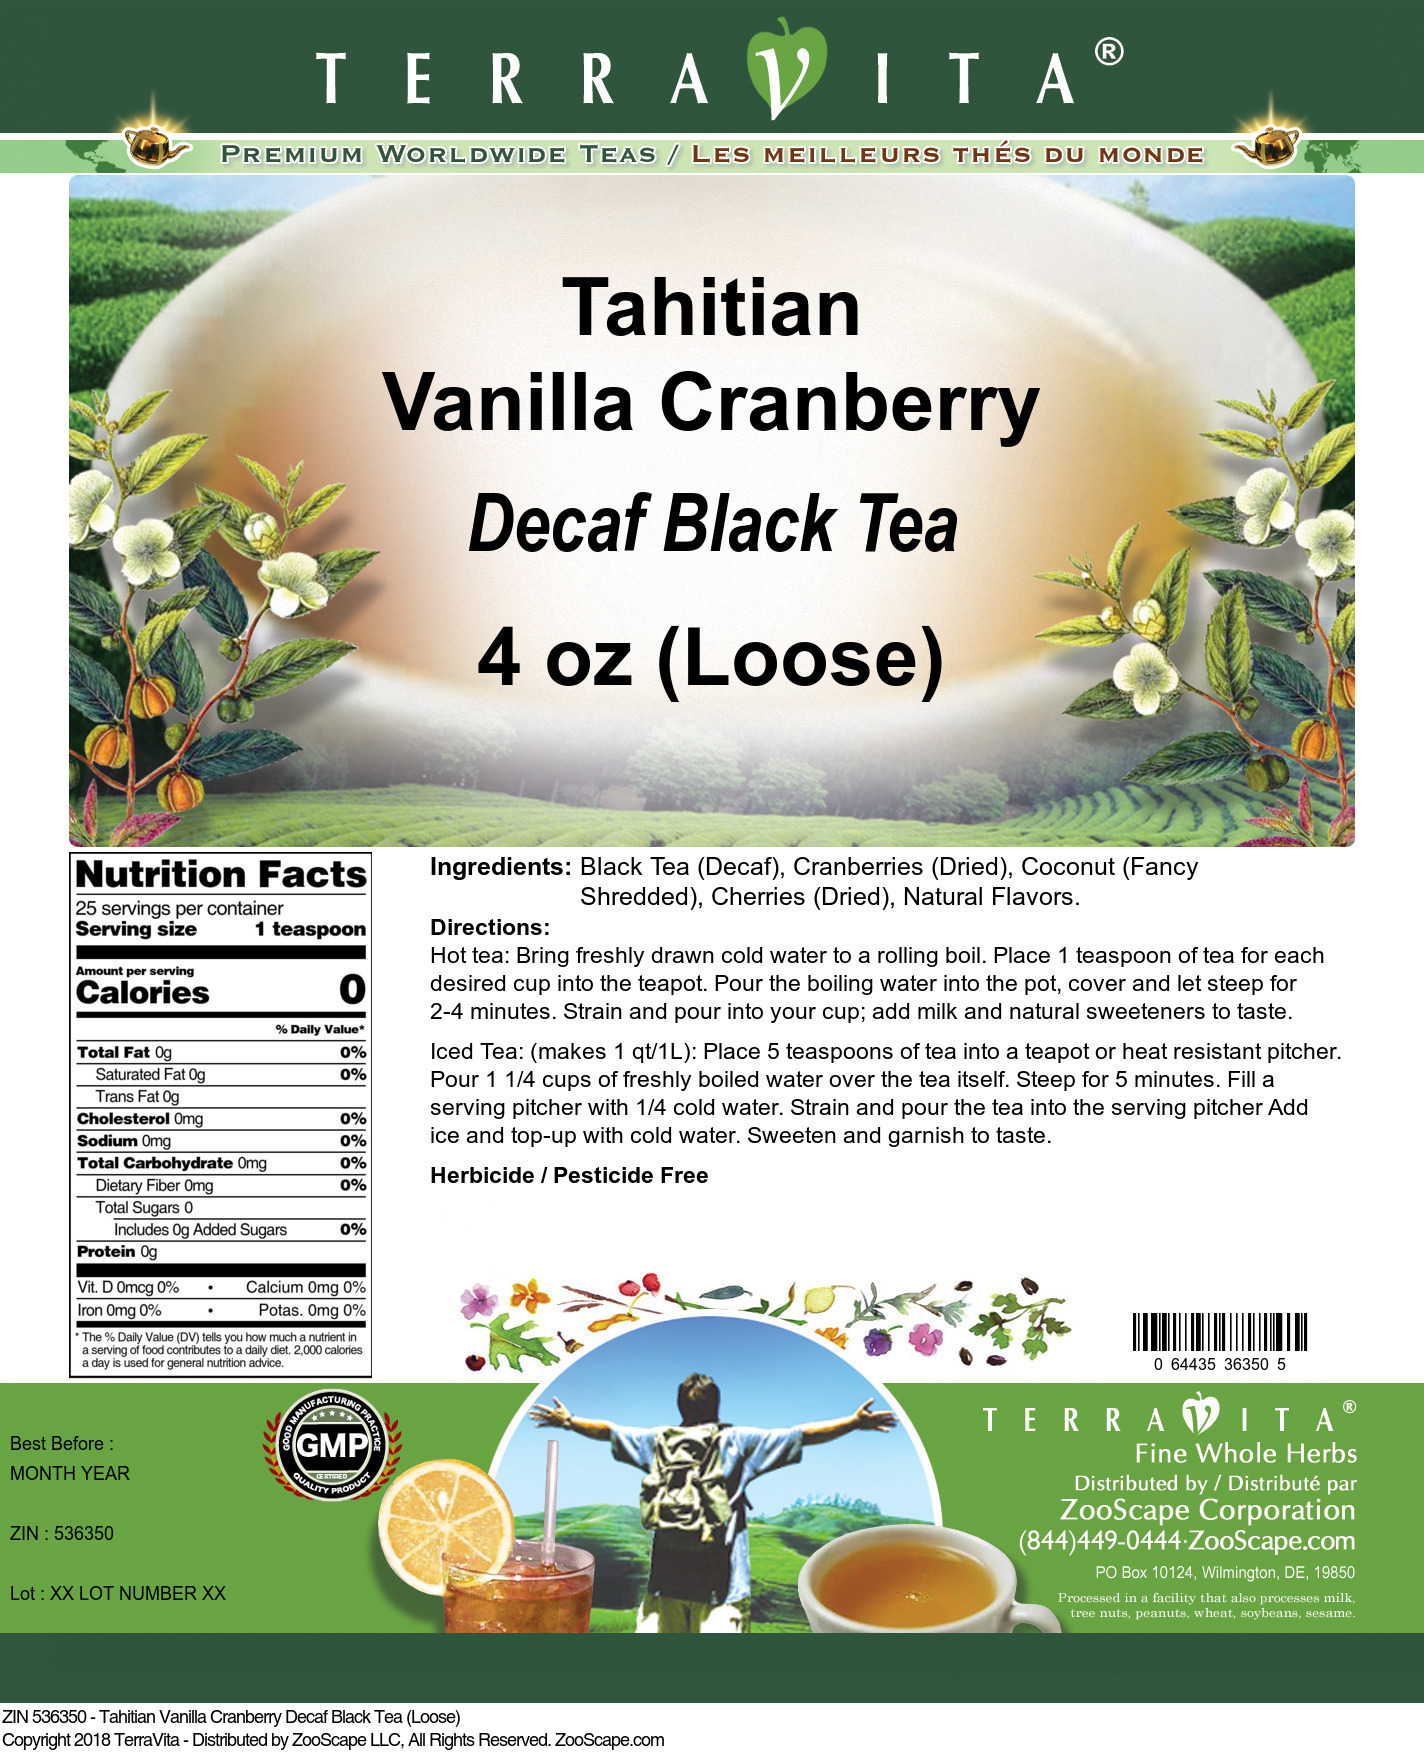 Tahitian Vanilla Cranberry Decaf Black Tea (Loose) - Label